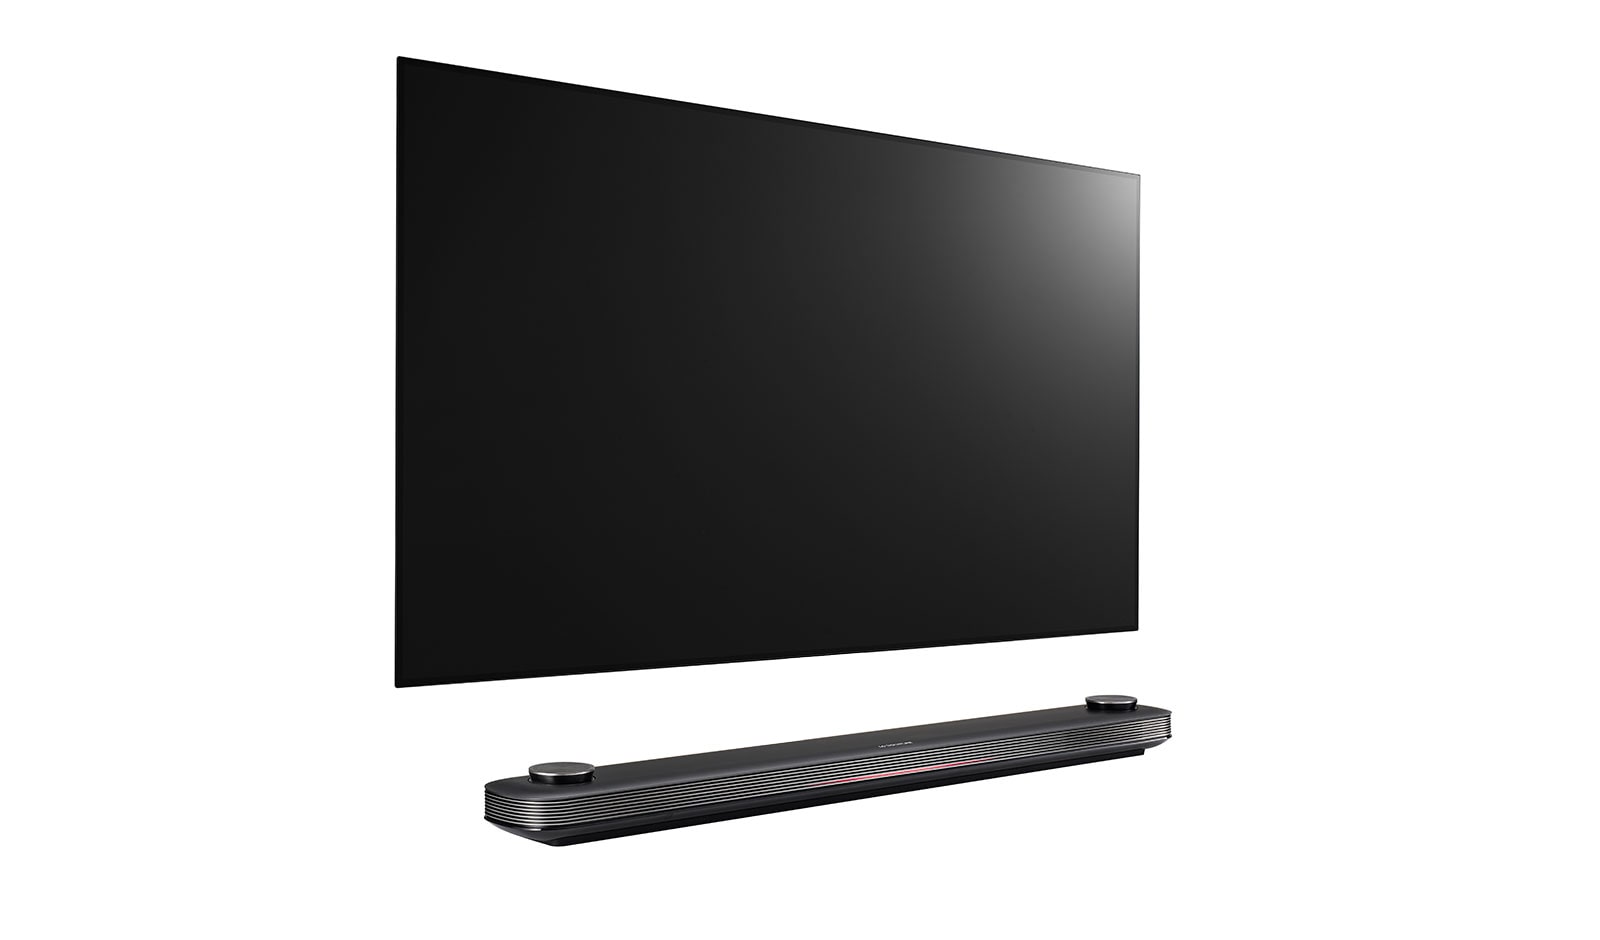 LG unveils W7 'Wallpaper OLED' TV - FlatpanelsHD